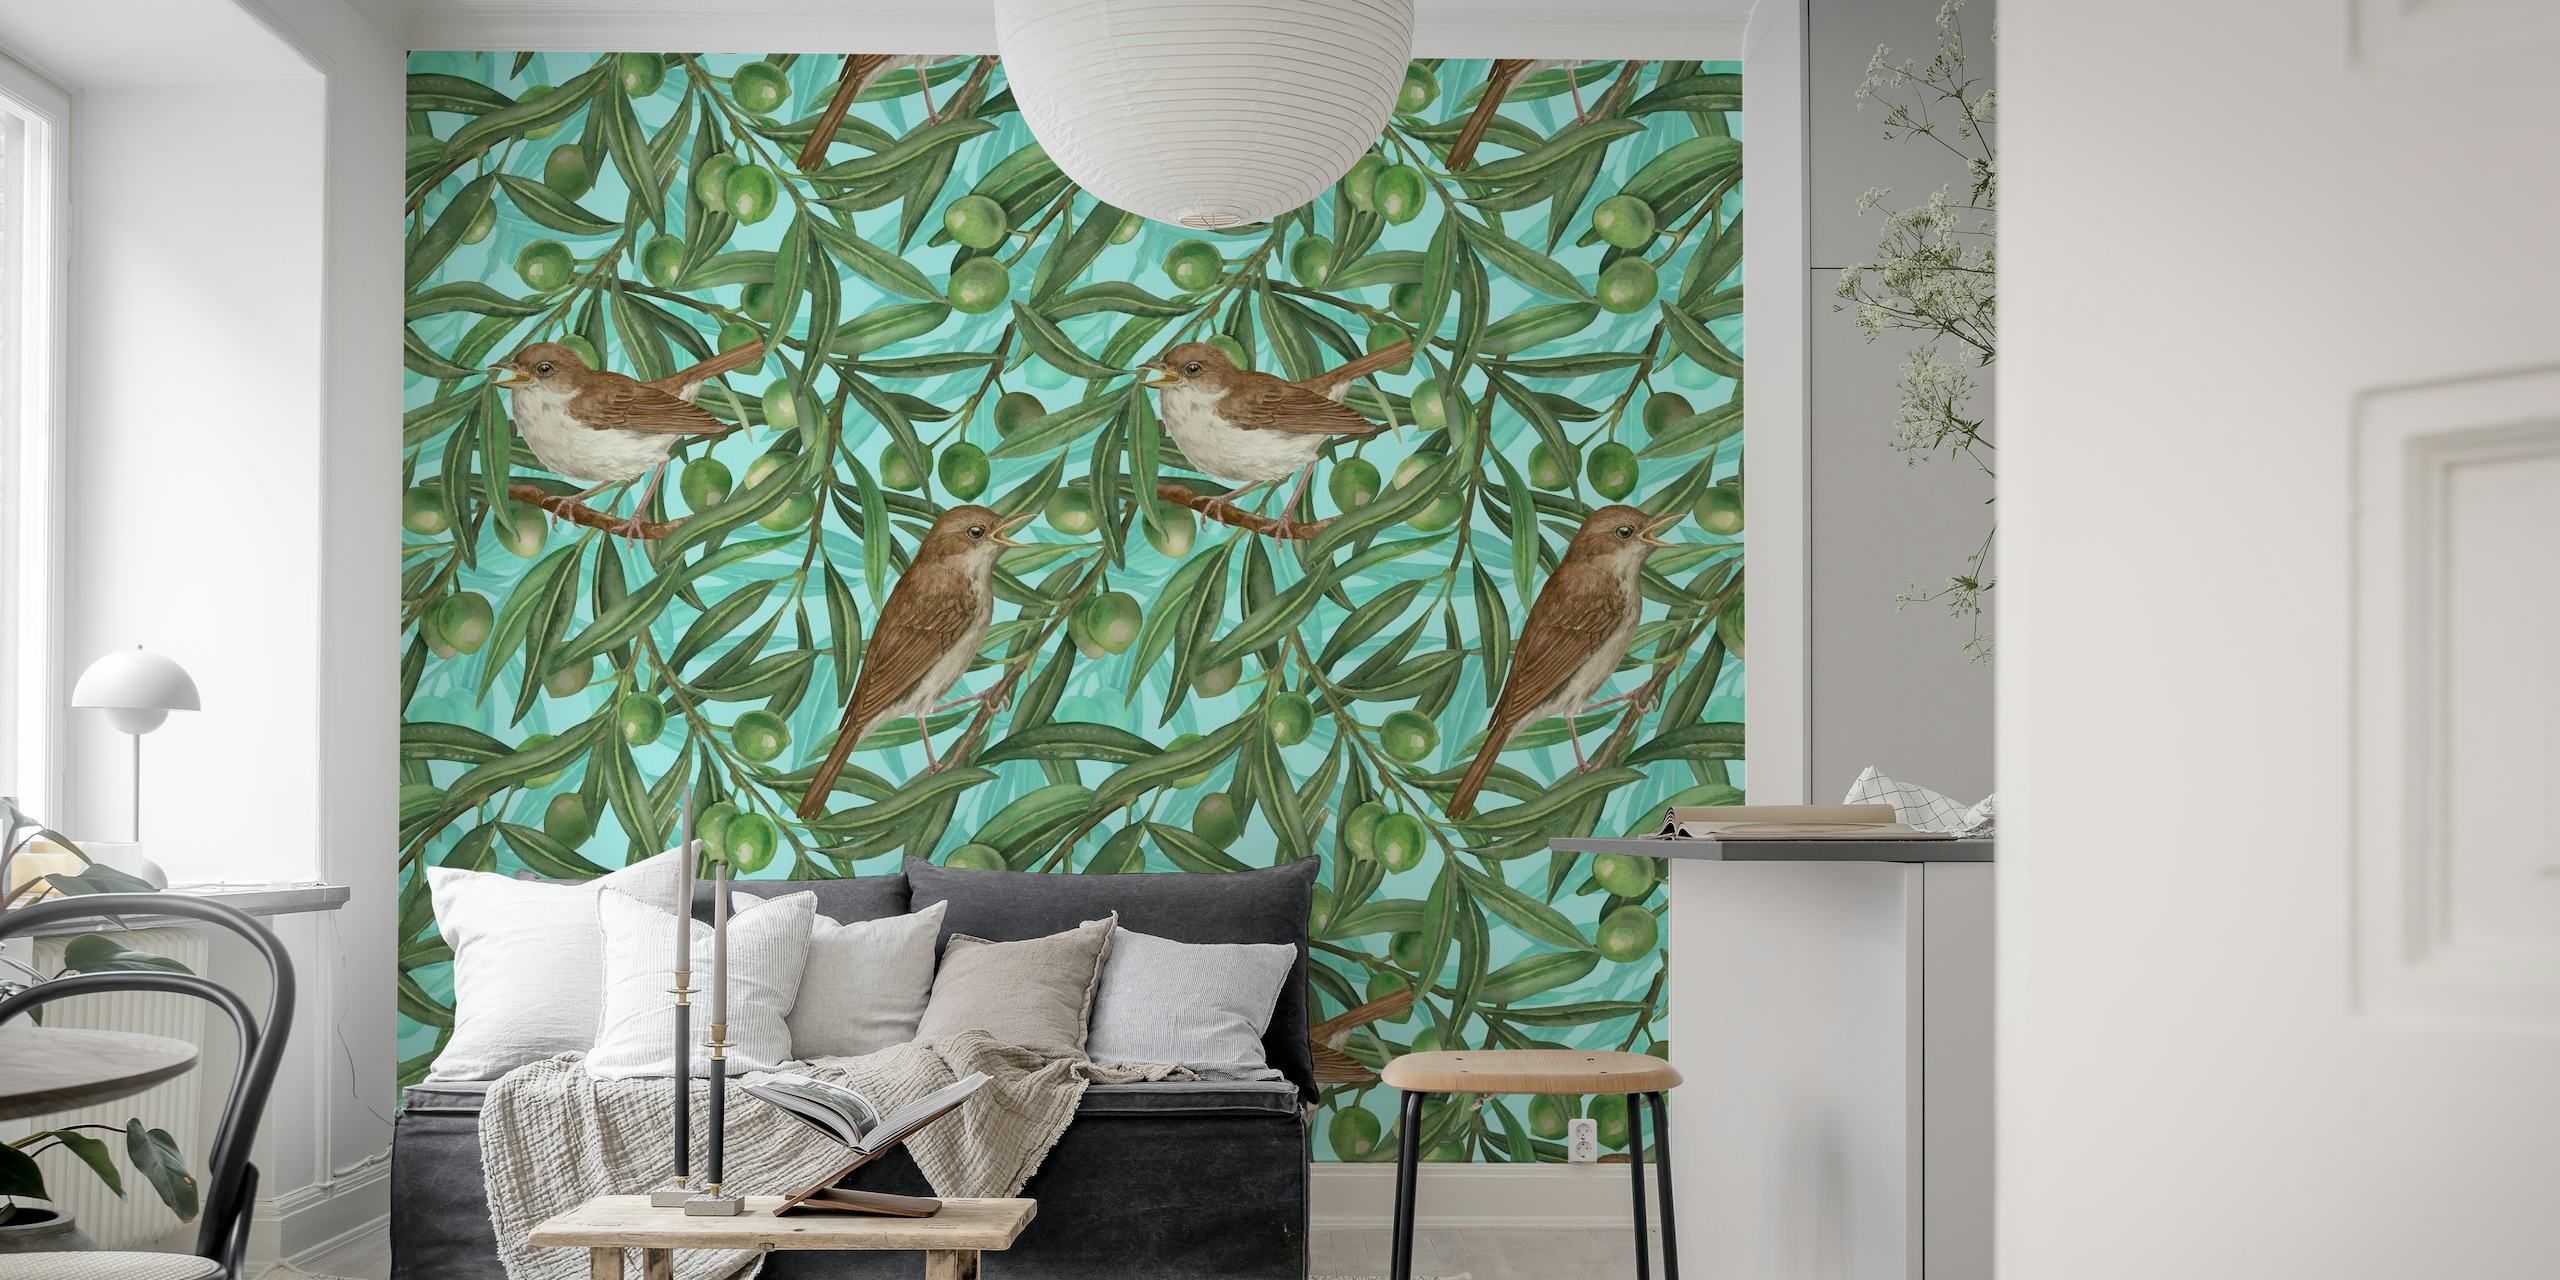 Illustratief fotobehang van vogels in olijfbomen met rijpe olijven